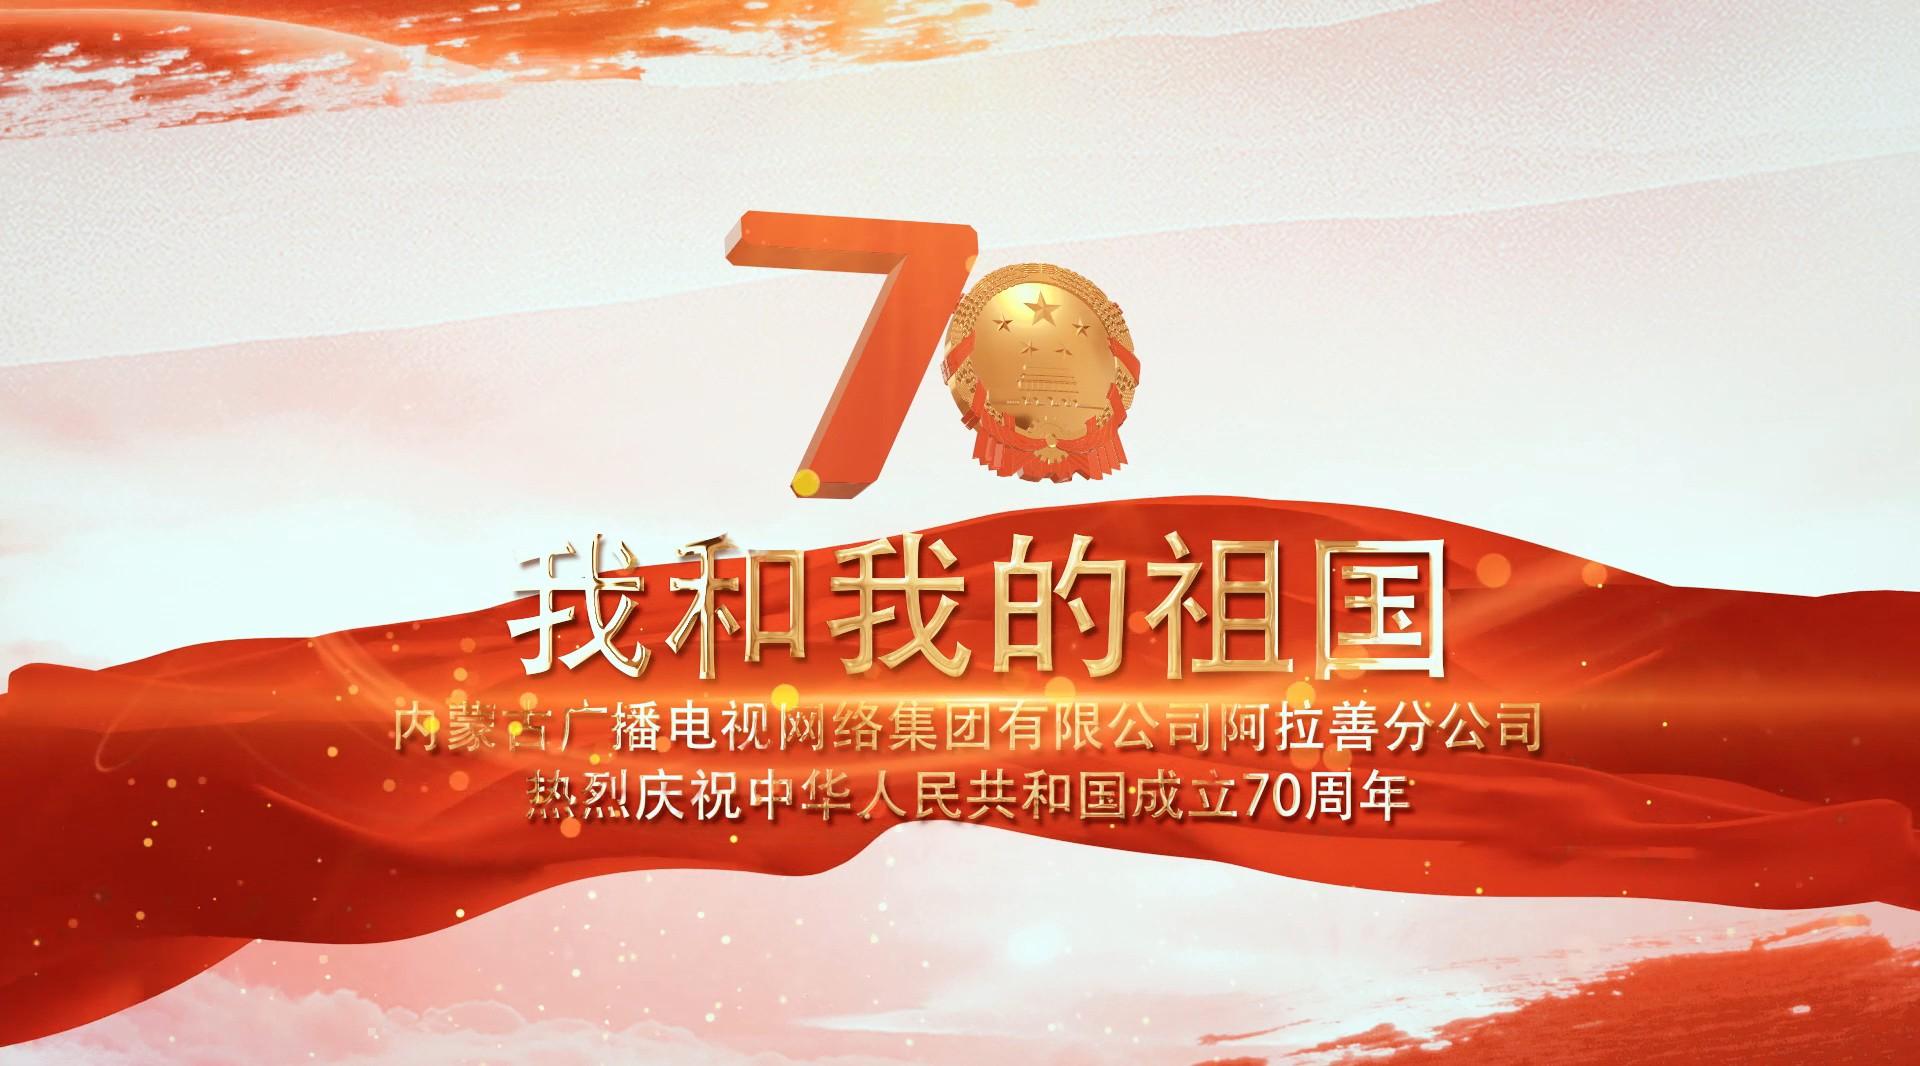 阿拉善广电网络公司庆祝祖国70华诞